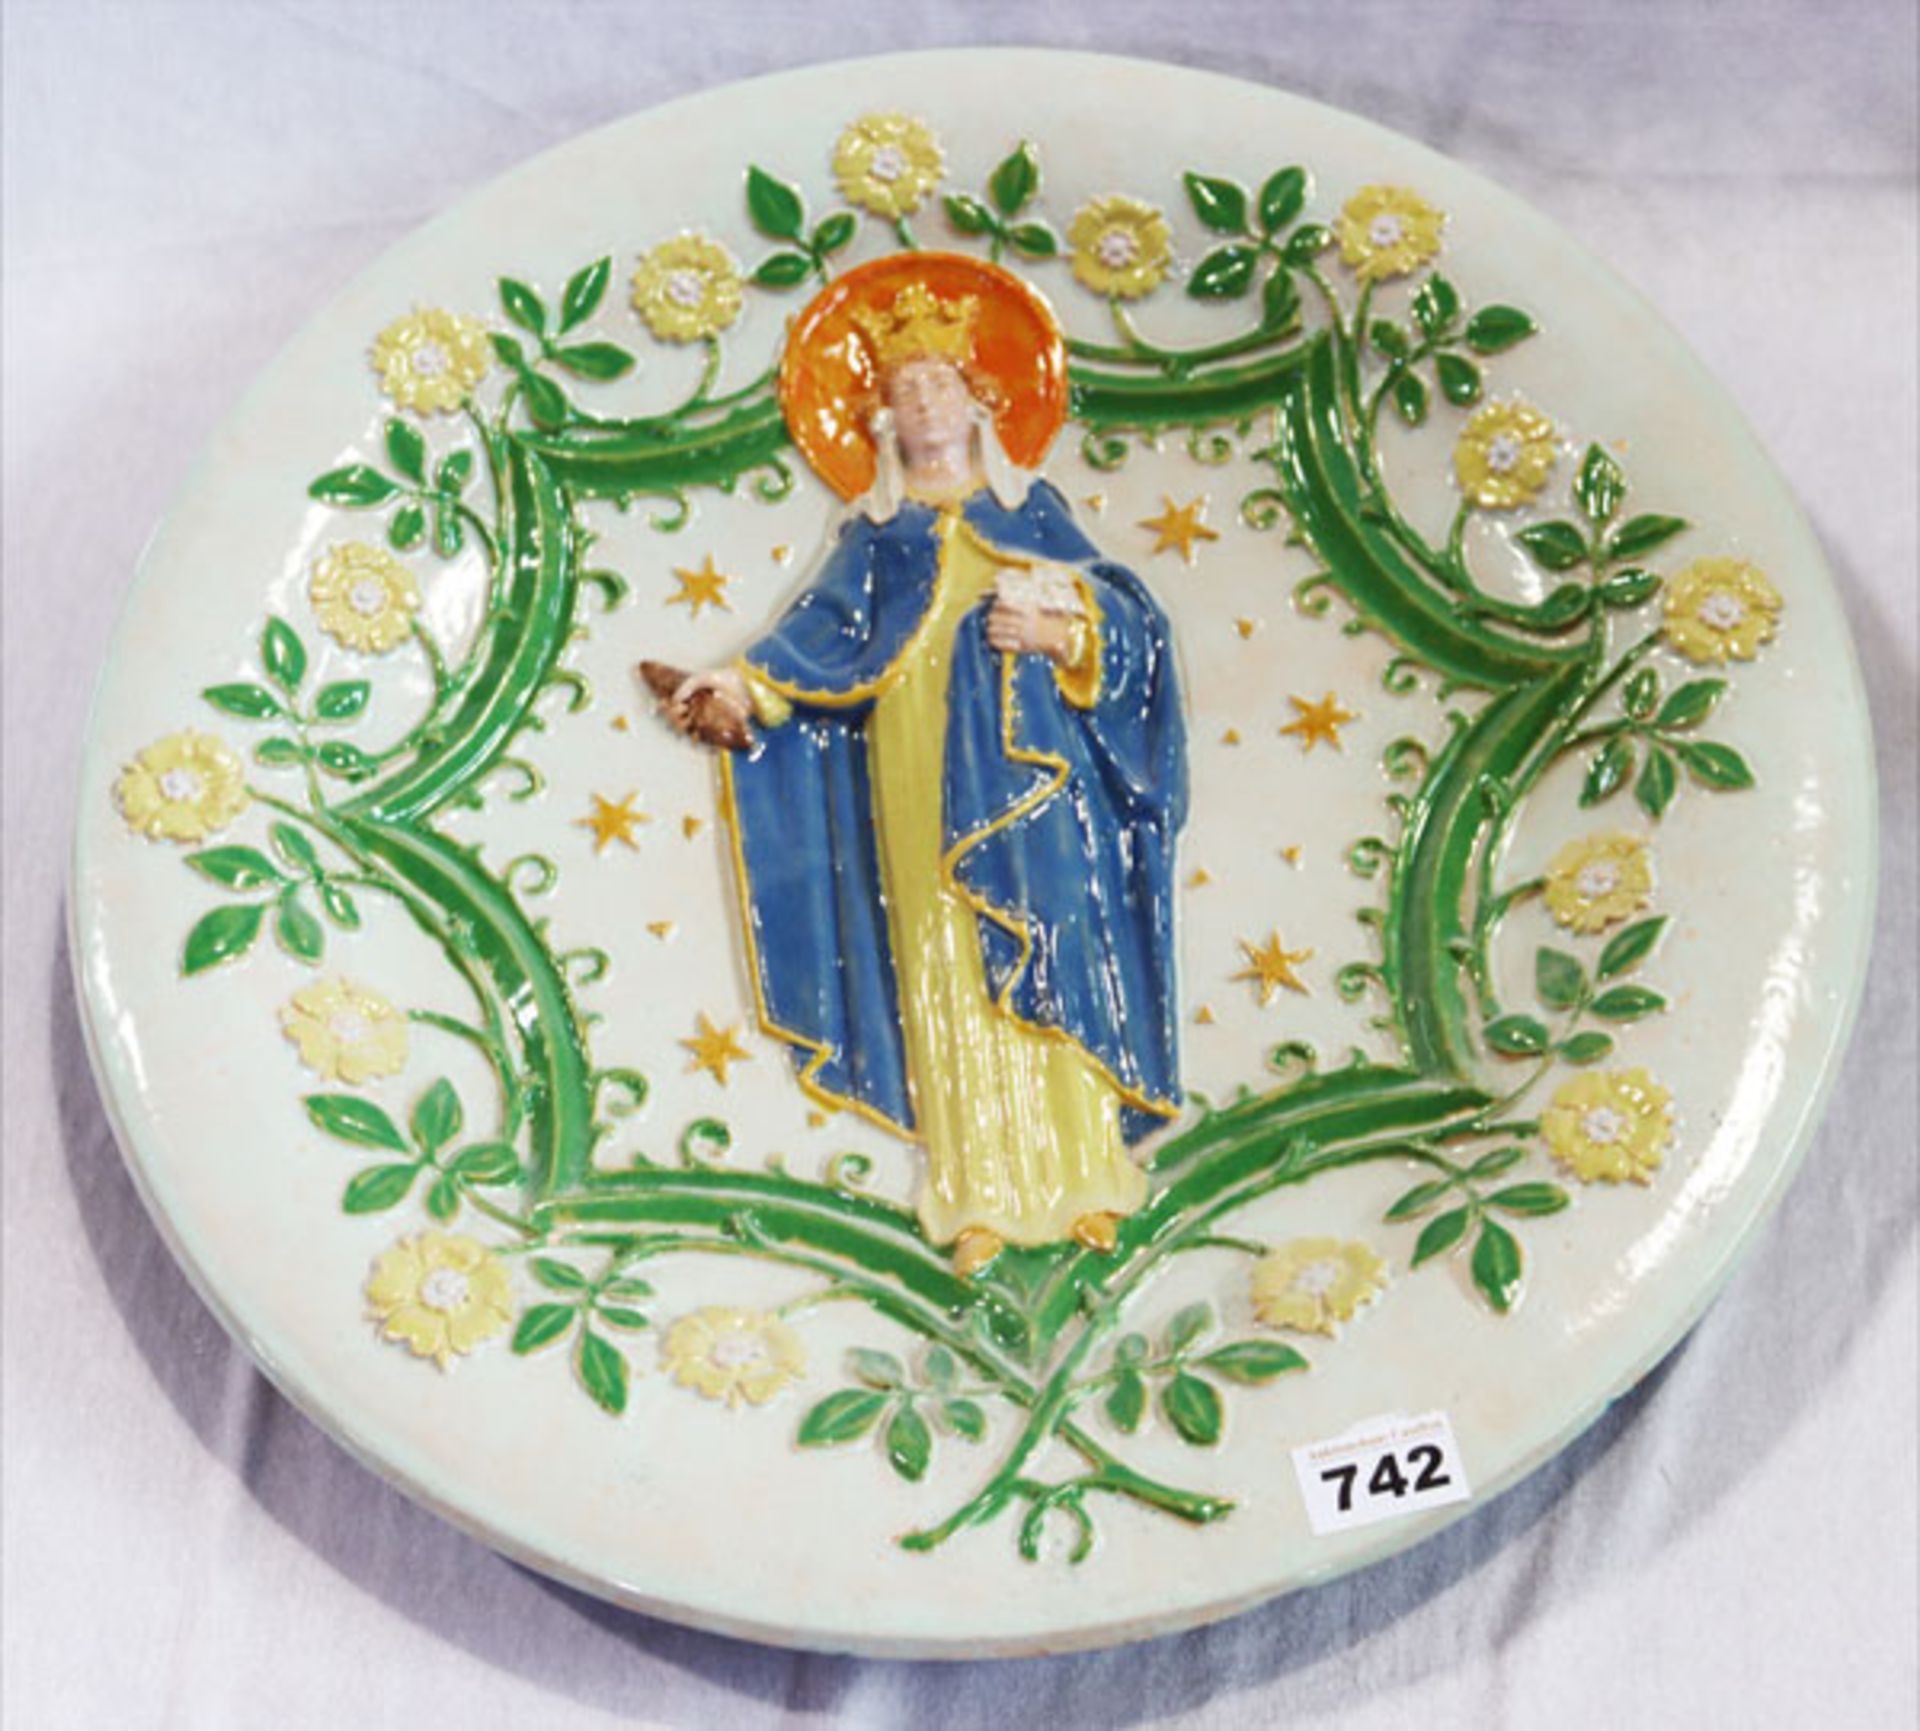 Keramikteller mit reliefiertem Dekor 'Maria mit Blütenkranz', farbig glasiert, D 50.5 cm, teils